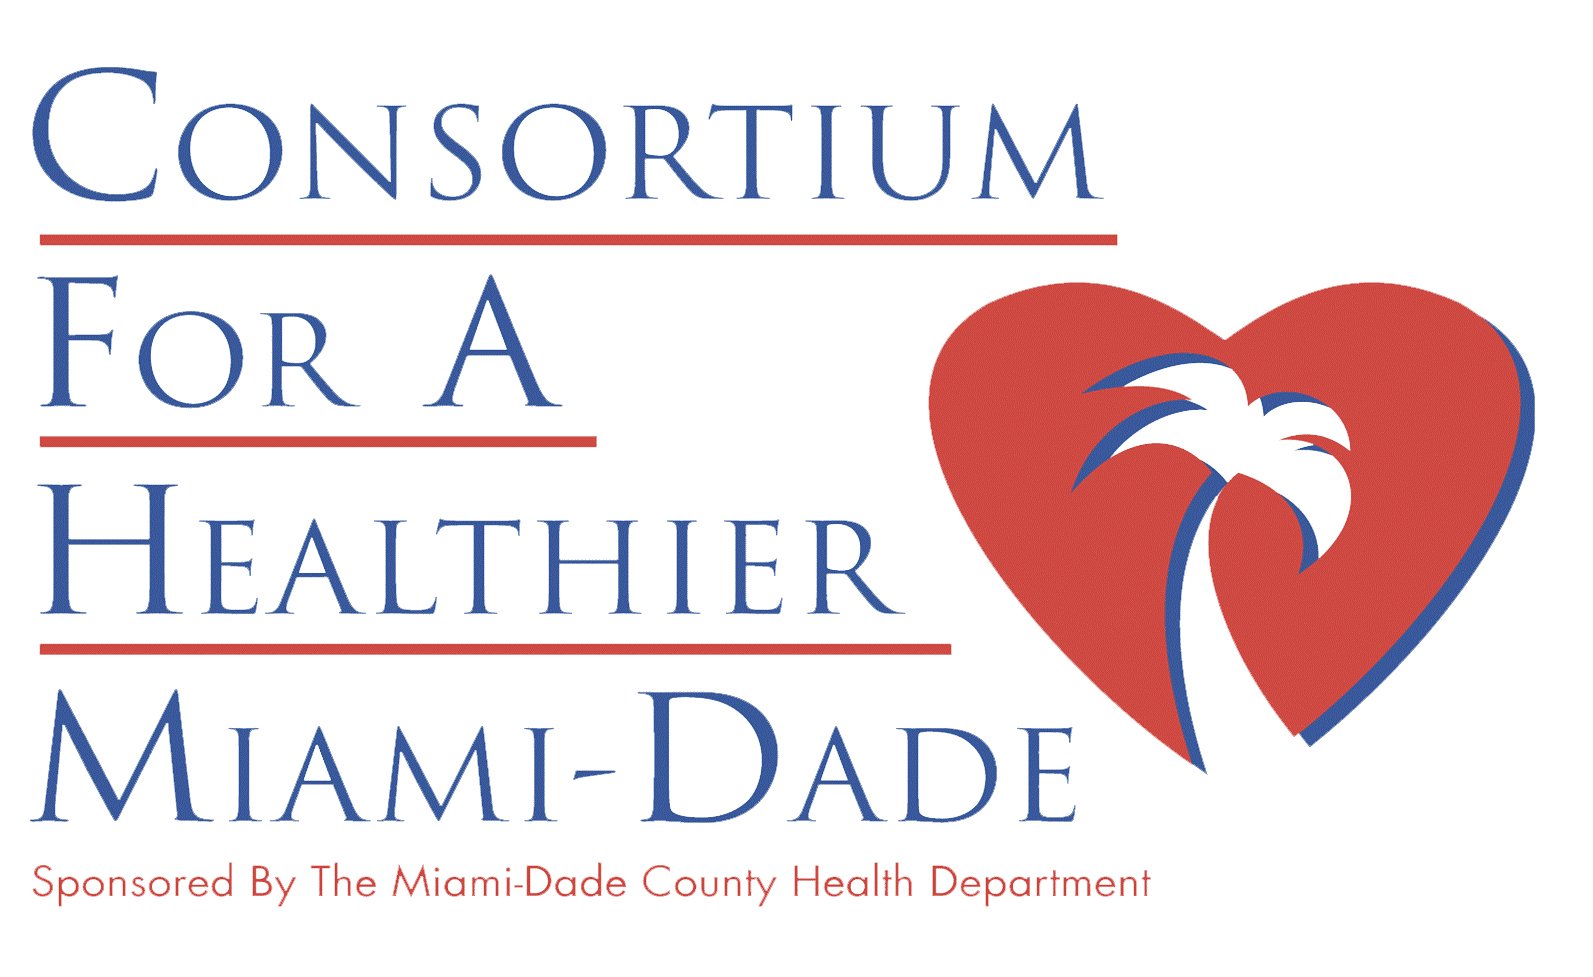 Consortium for a Healthier Miami-Dade